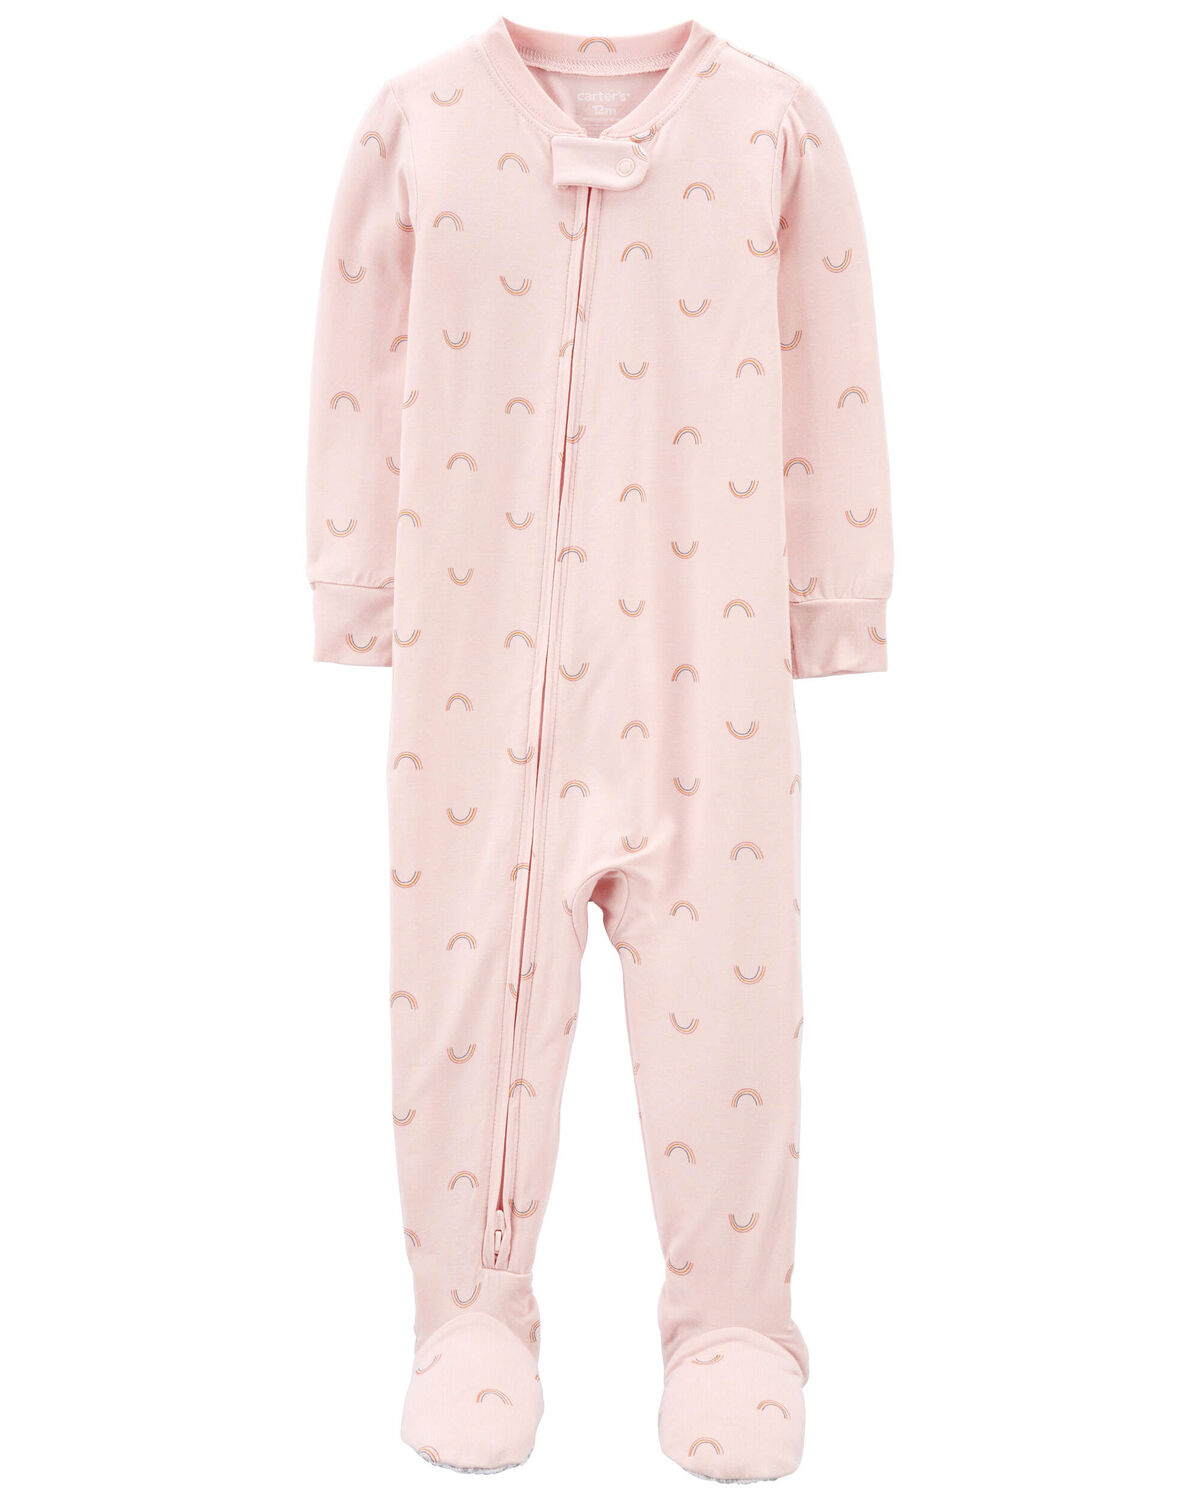 Toddler 1-Piece PurelySoft Footie Pajamas